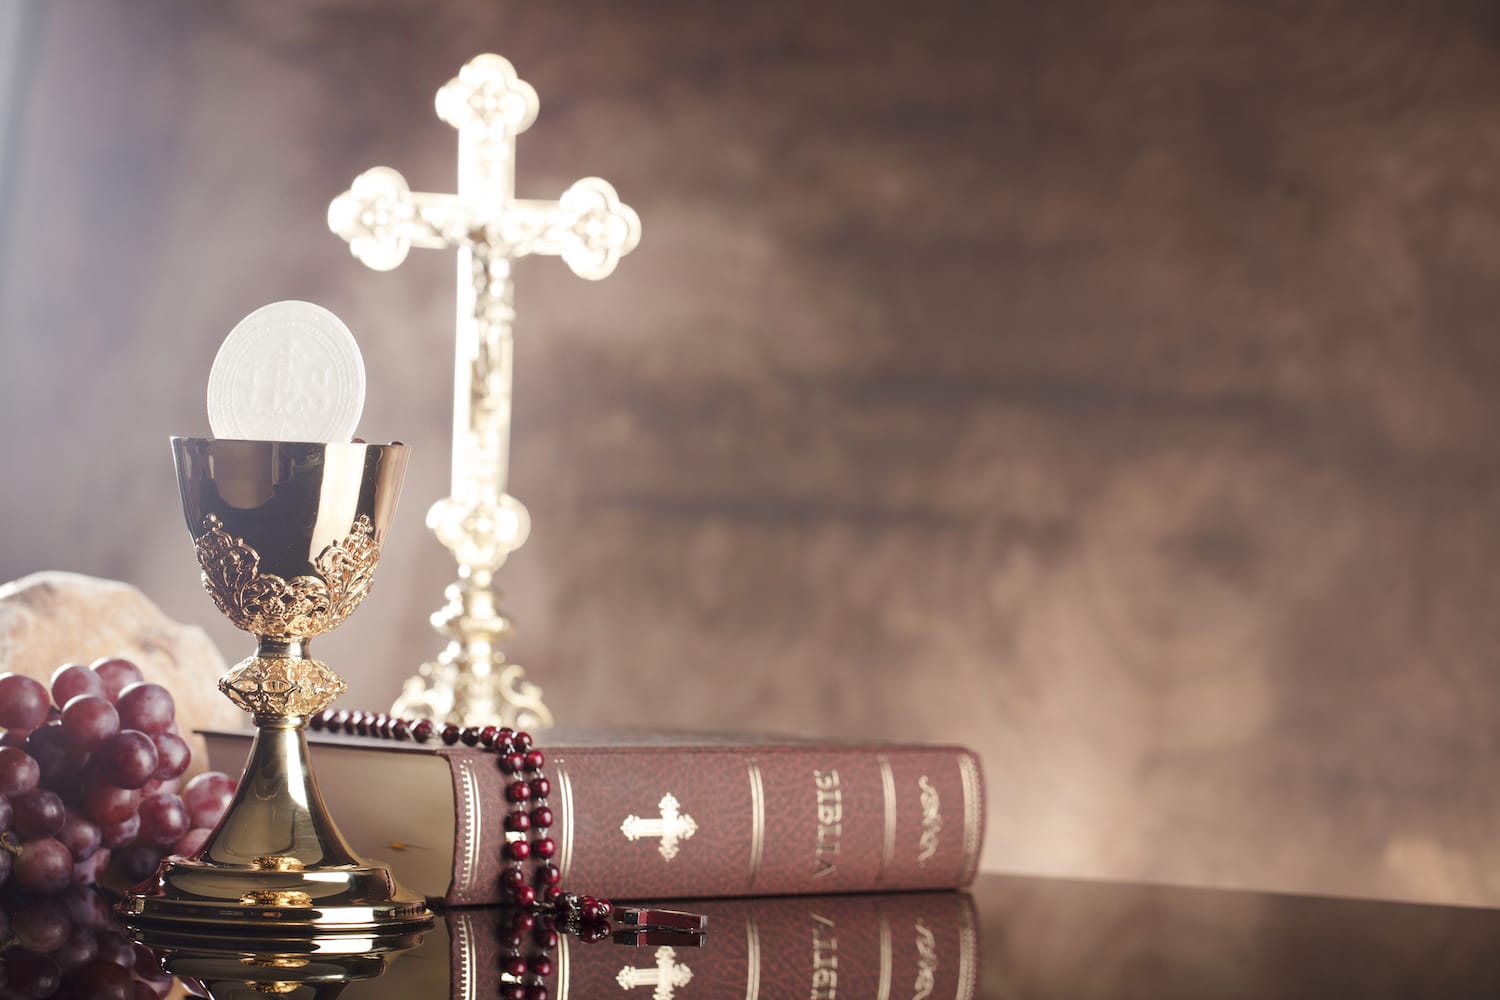 Catholic Drug and Alcohol Rehab